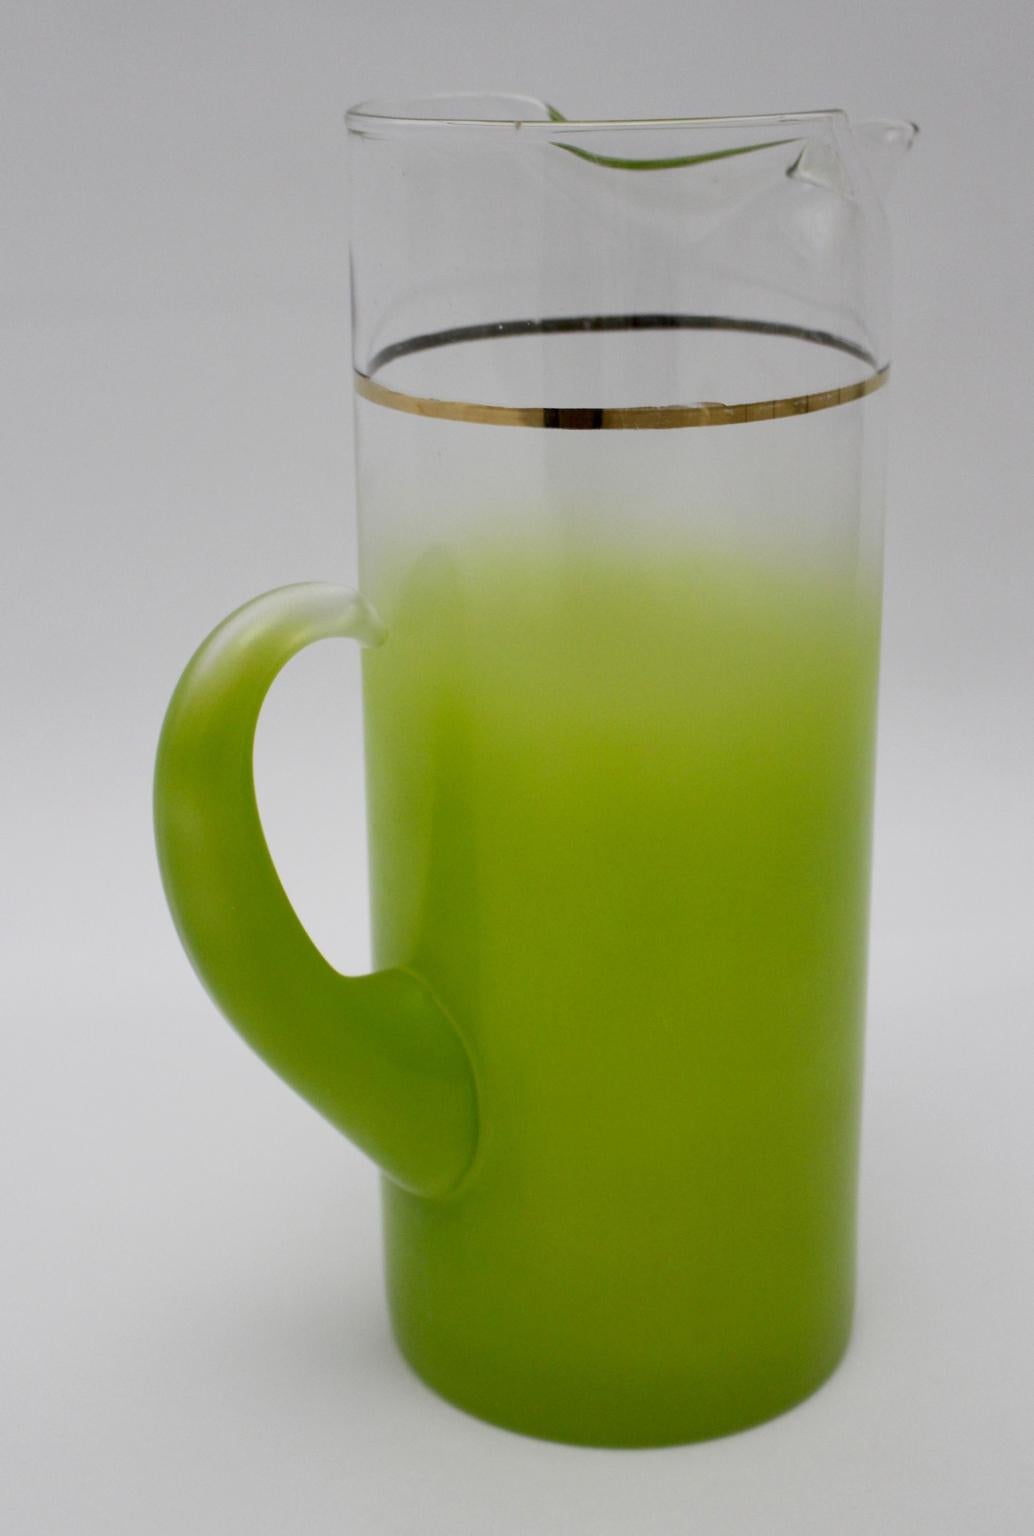 Eine grüne charmante Vintage Krug, der eine Kapazität von 2 Litern hat.
Das MATERIAL dieses Bargeschirrs ist Klarglas und die Farbe geht von klar in grün über, außerdem ist der Glaskrug mit einem feinen goldenen Streifen verziert.
Der